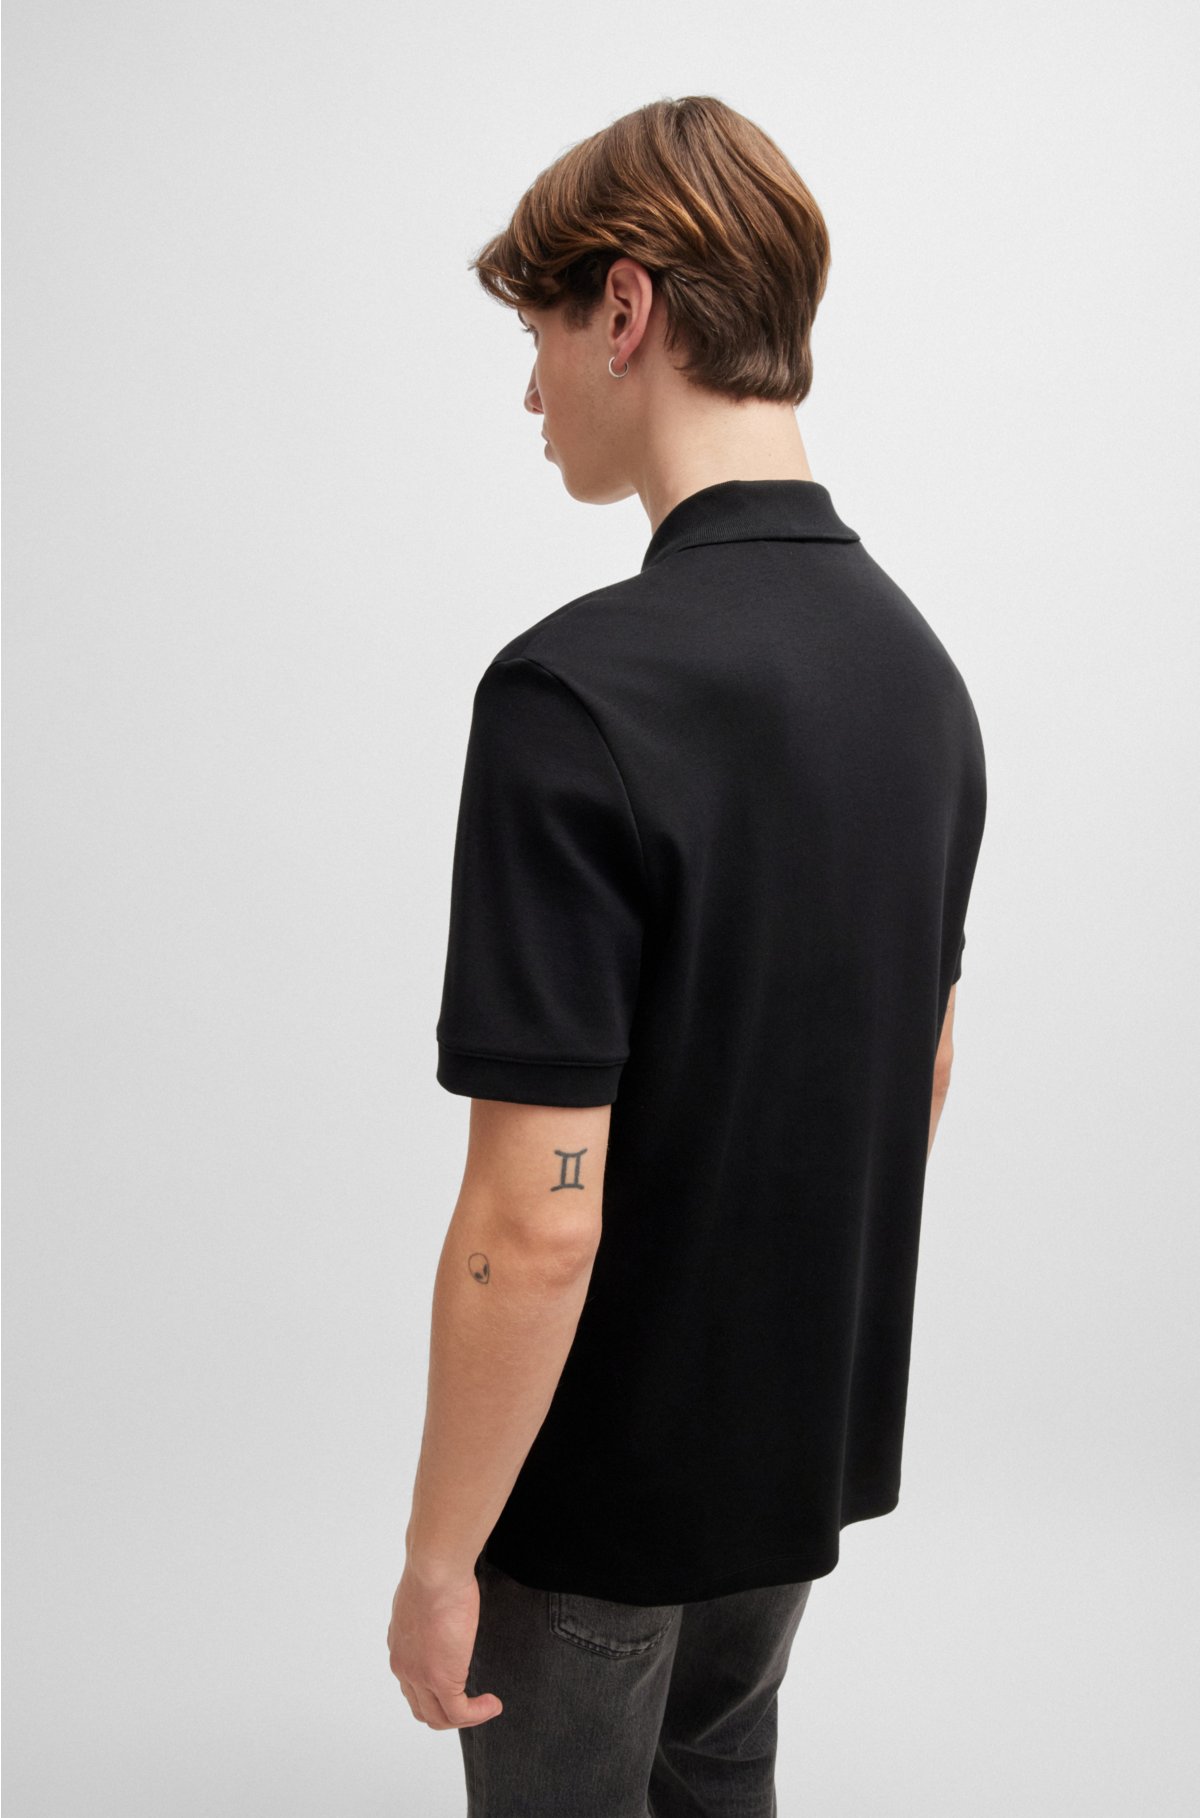 Cotton-piqué polo shirt with contrast logo, Black